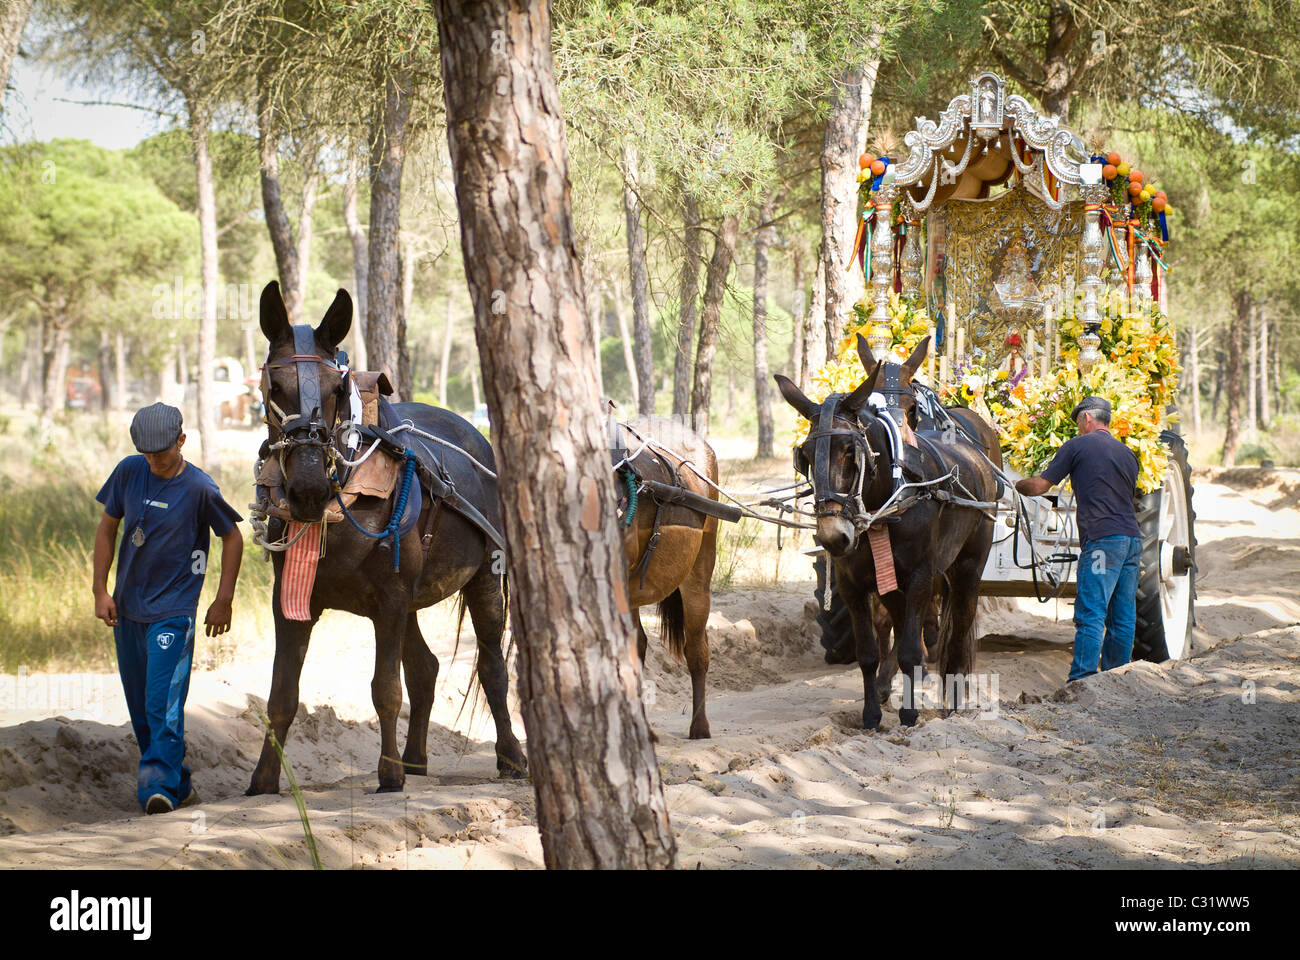 Romeria del Rocio pilgrimage in Andalusia, Spain Stock Photo